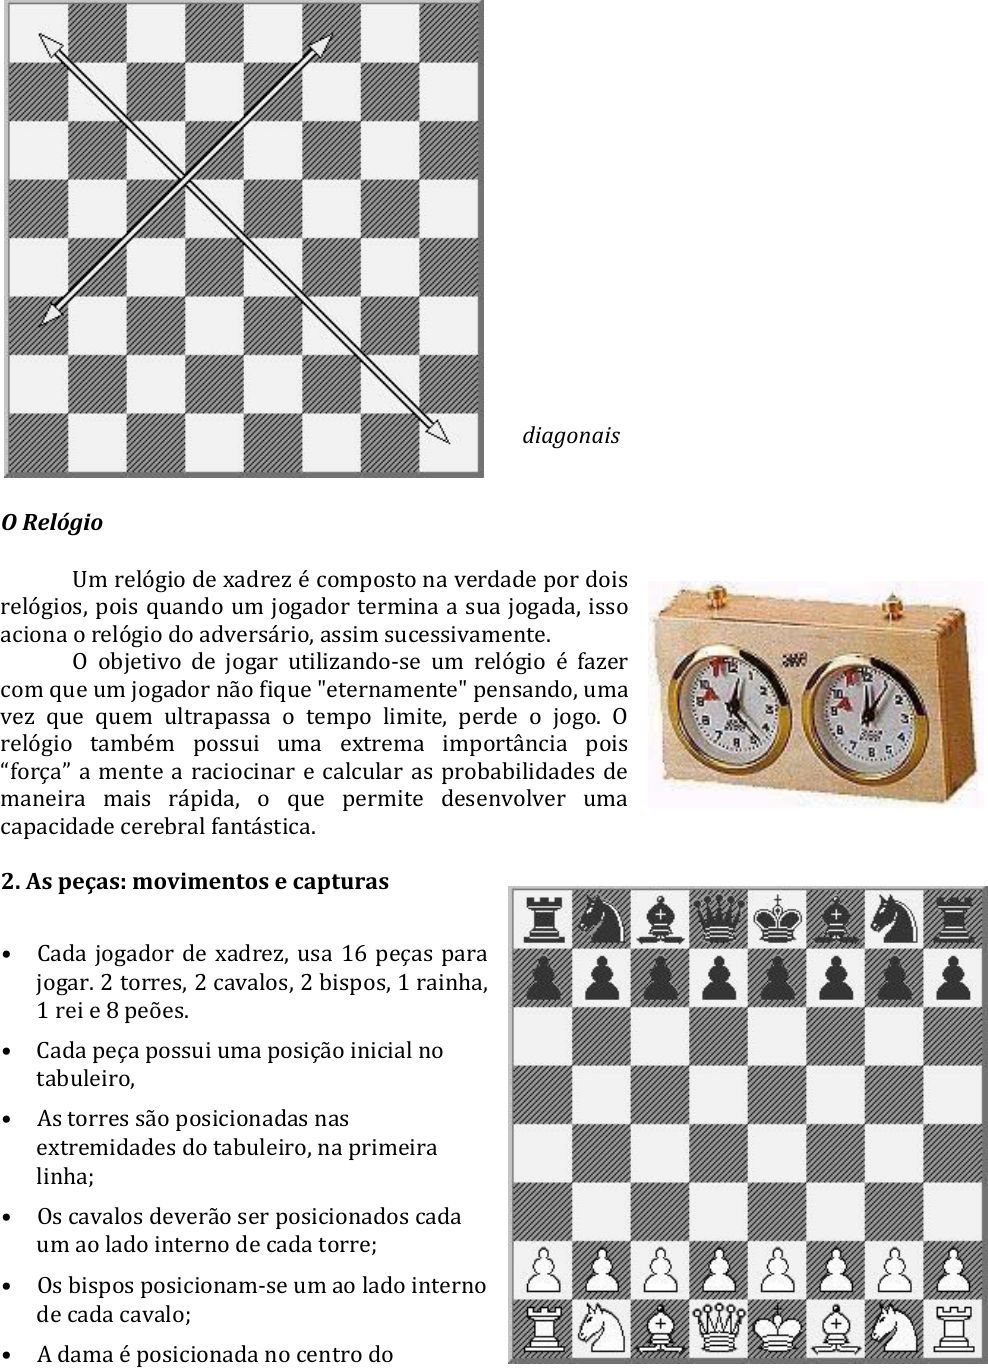 Xadrez: Os movimentos das peças não foram estabelecidos arbitrariamente, Geral